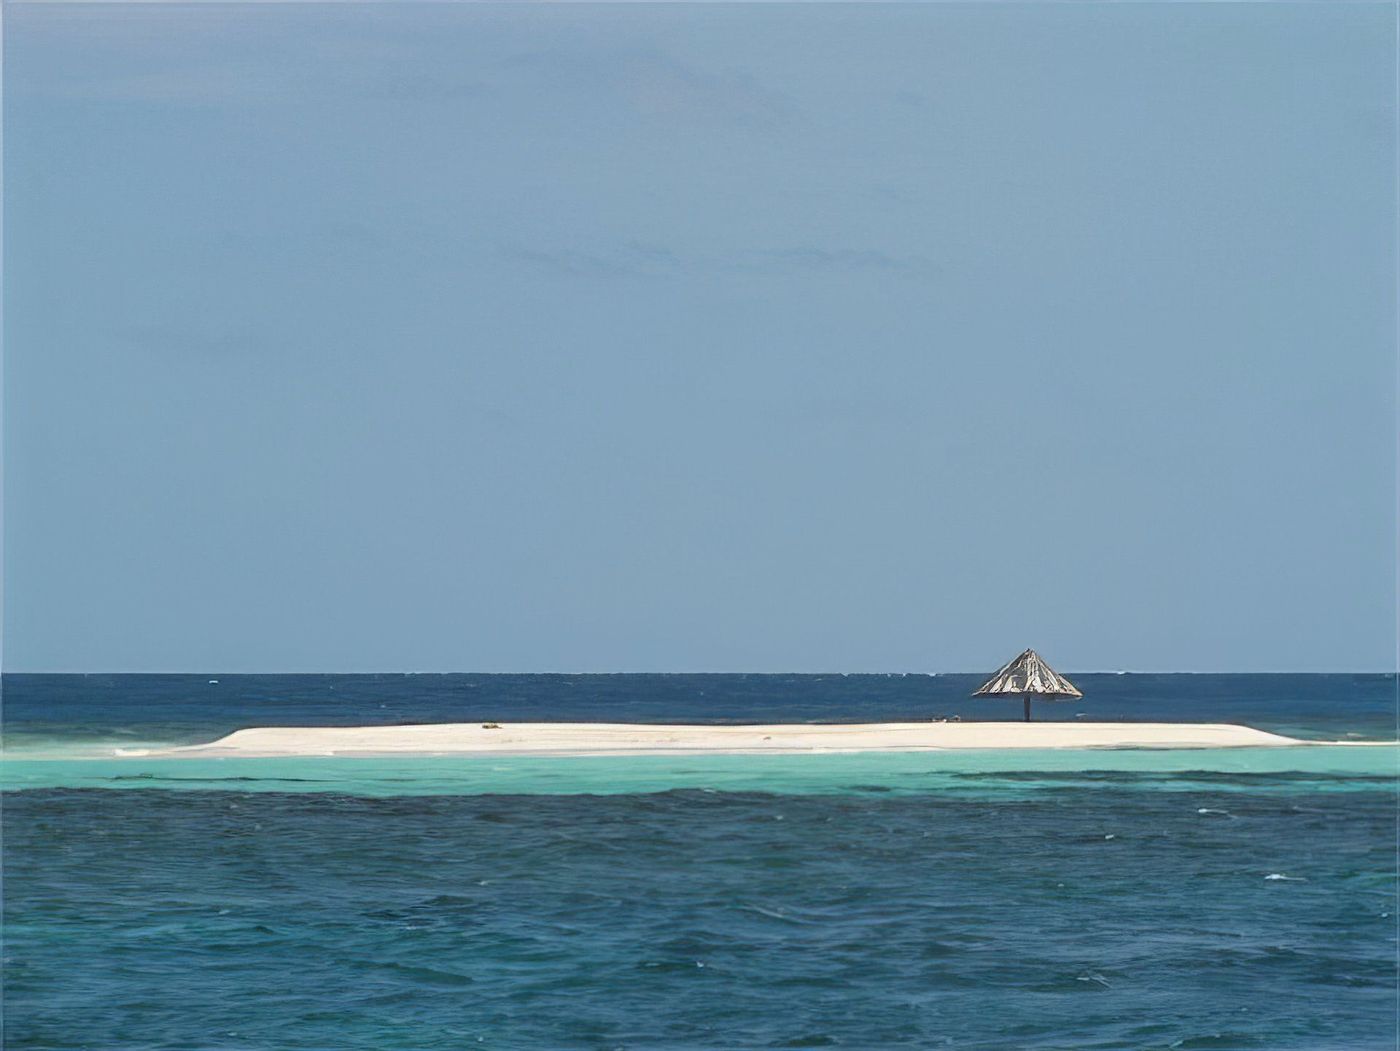 Île Morpion (Mopion)